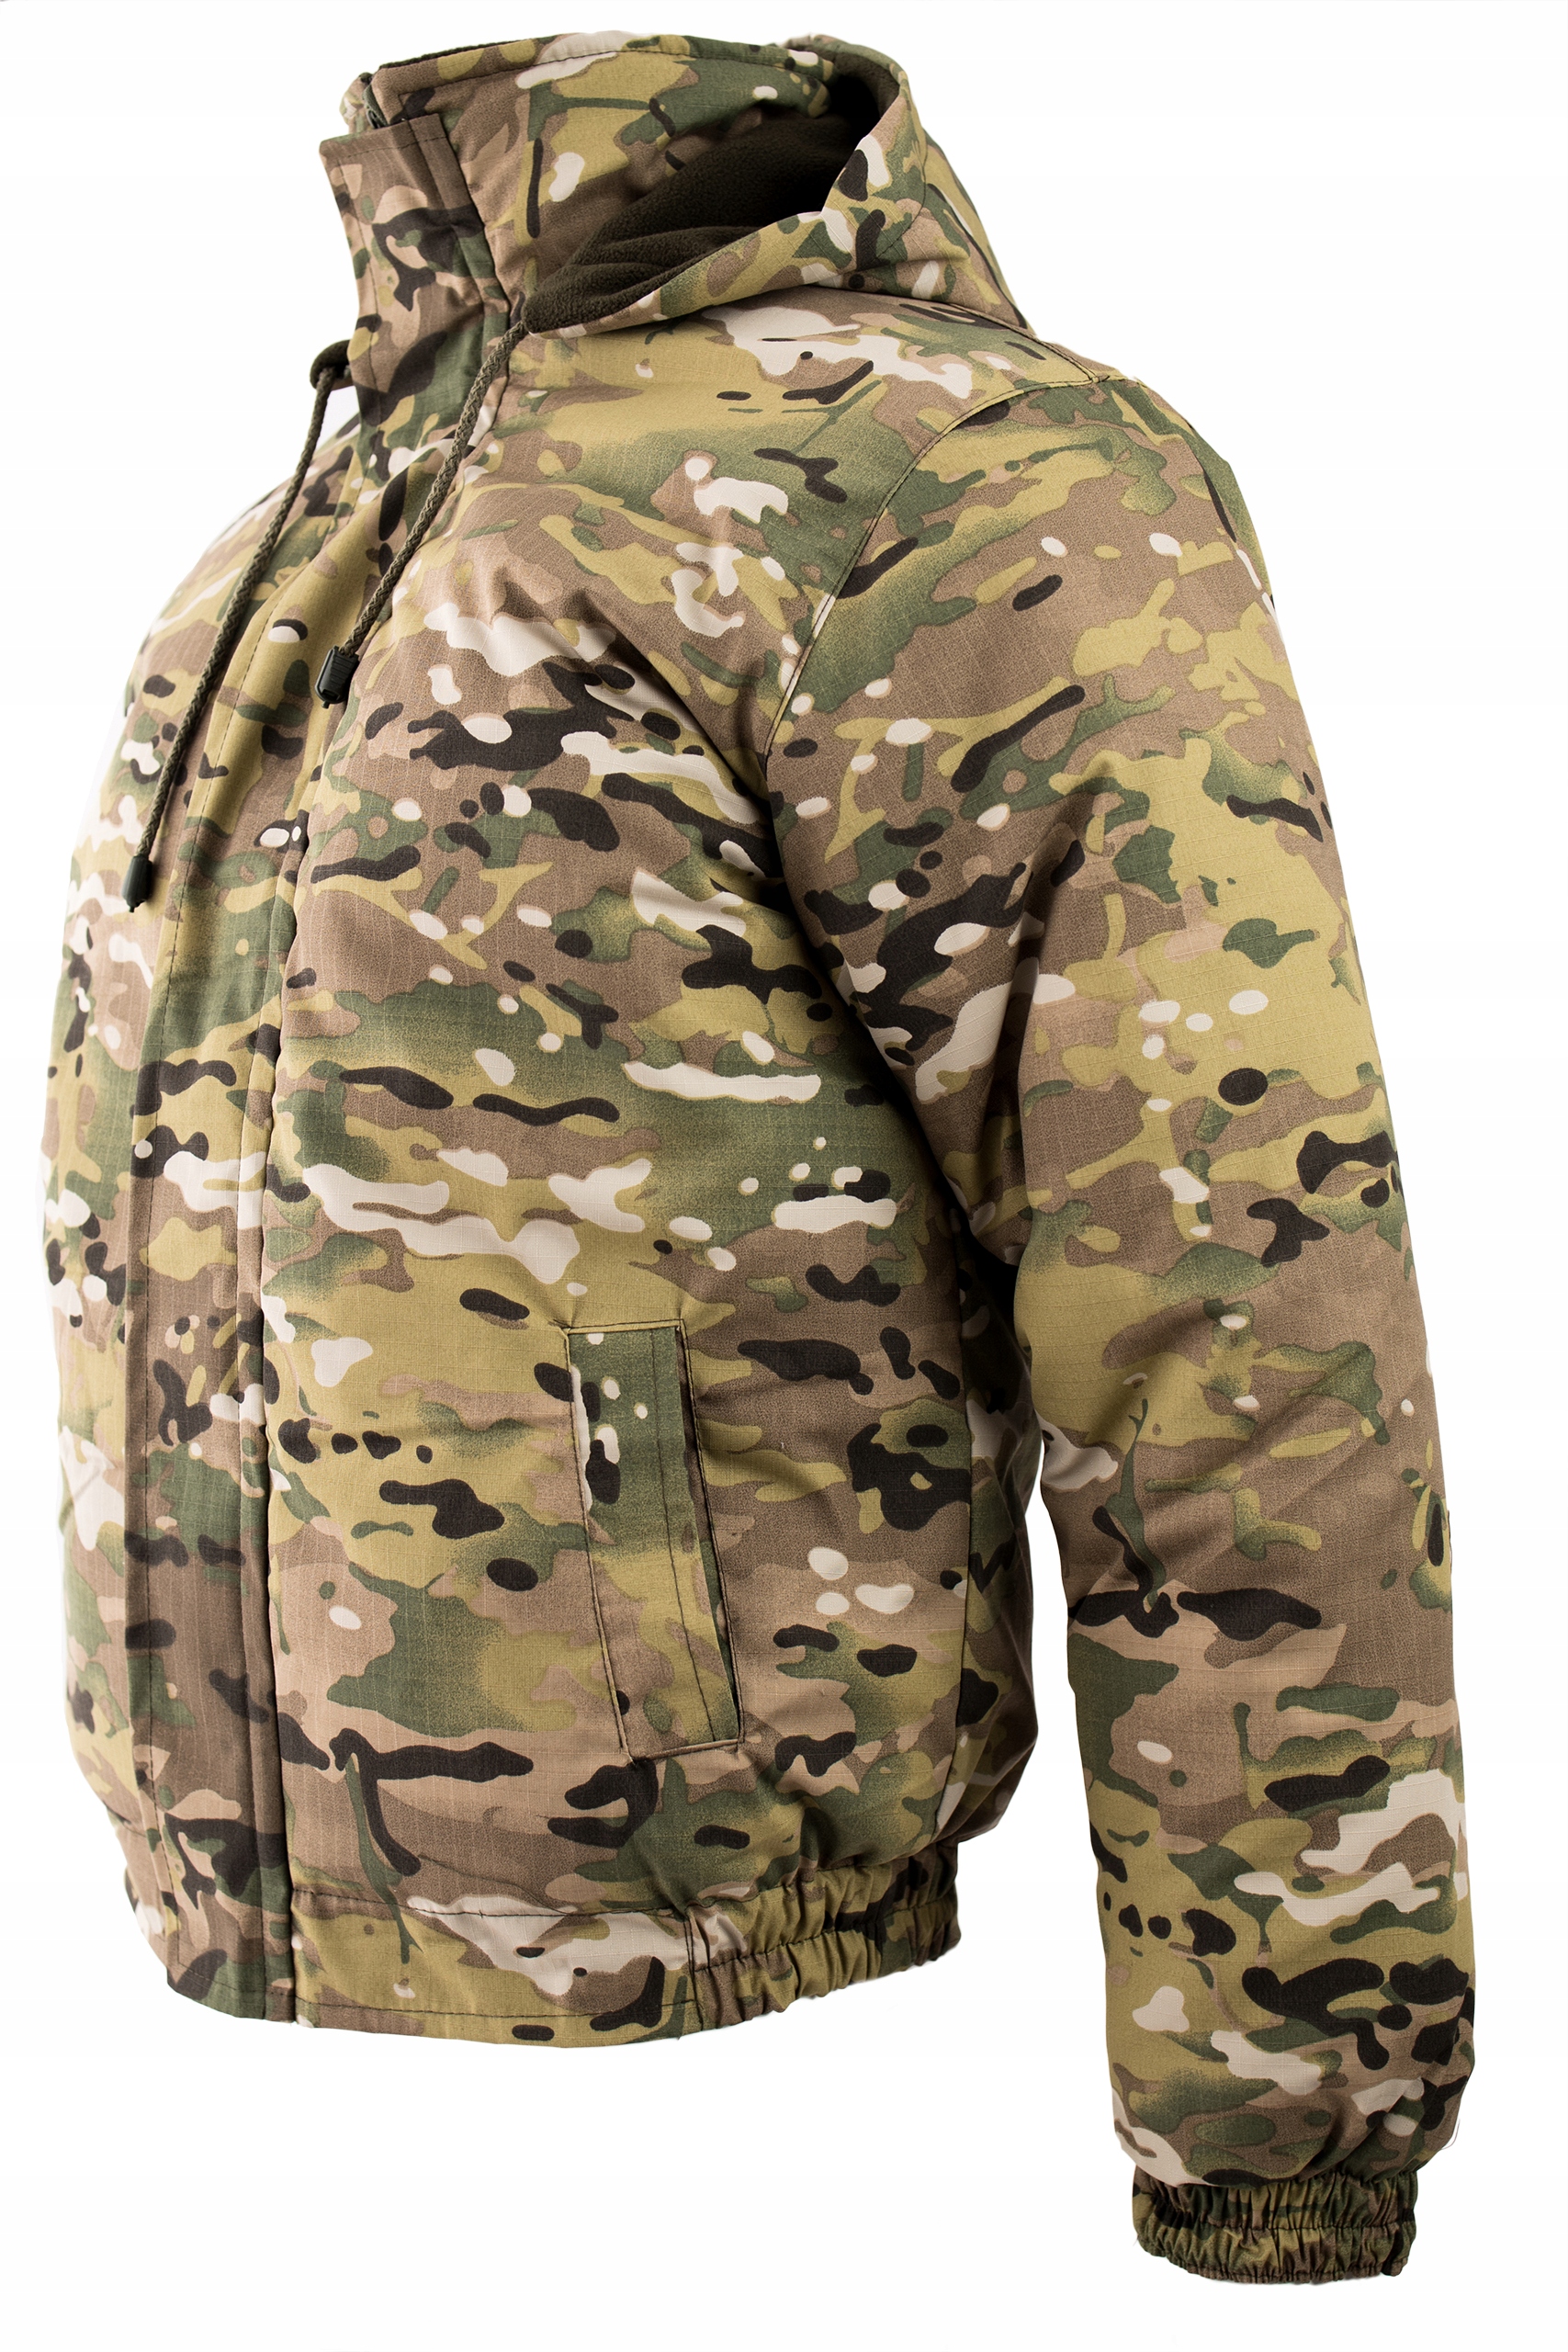 Військова зимова куртка ізольована Multicam roz. М Розмір М